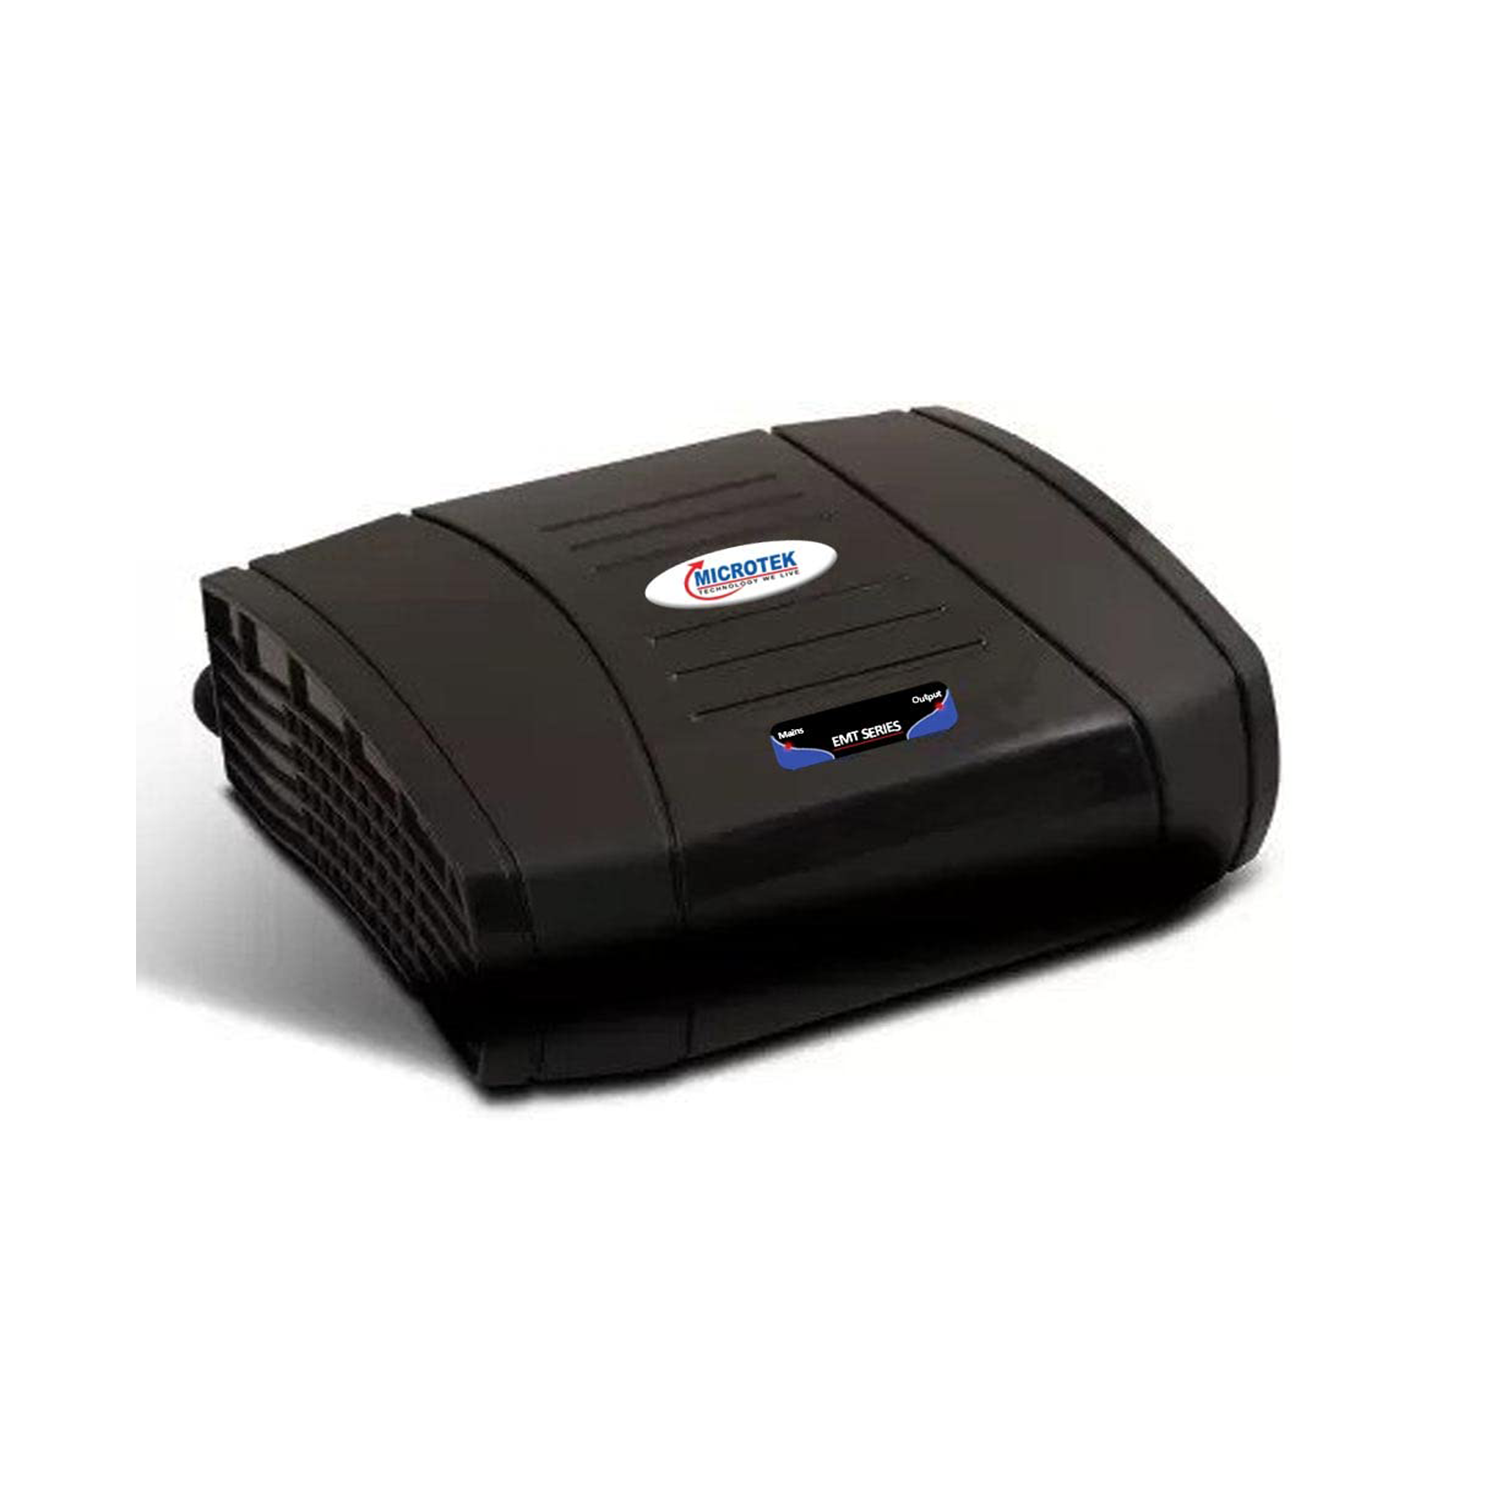 Microtek EMT1390 Digital Automatic Voltage Stabilizer 90V-300V (Black)